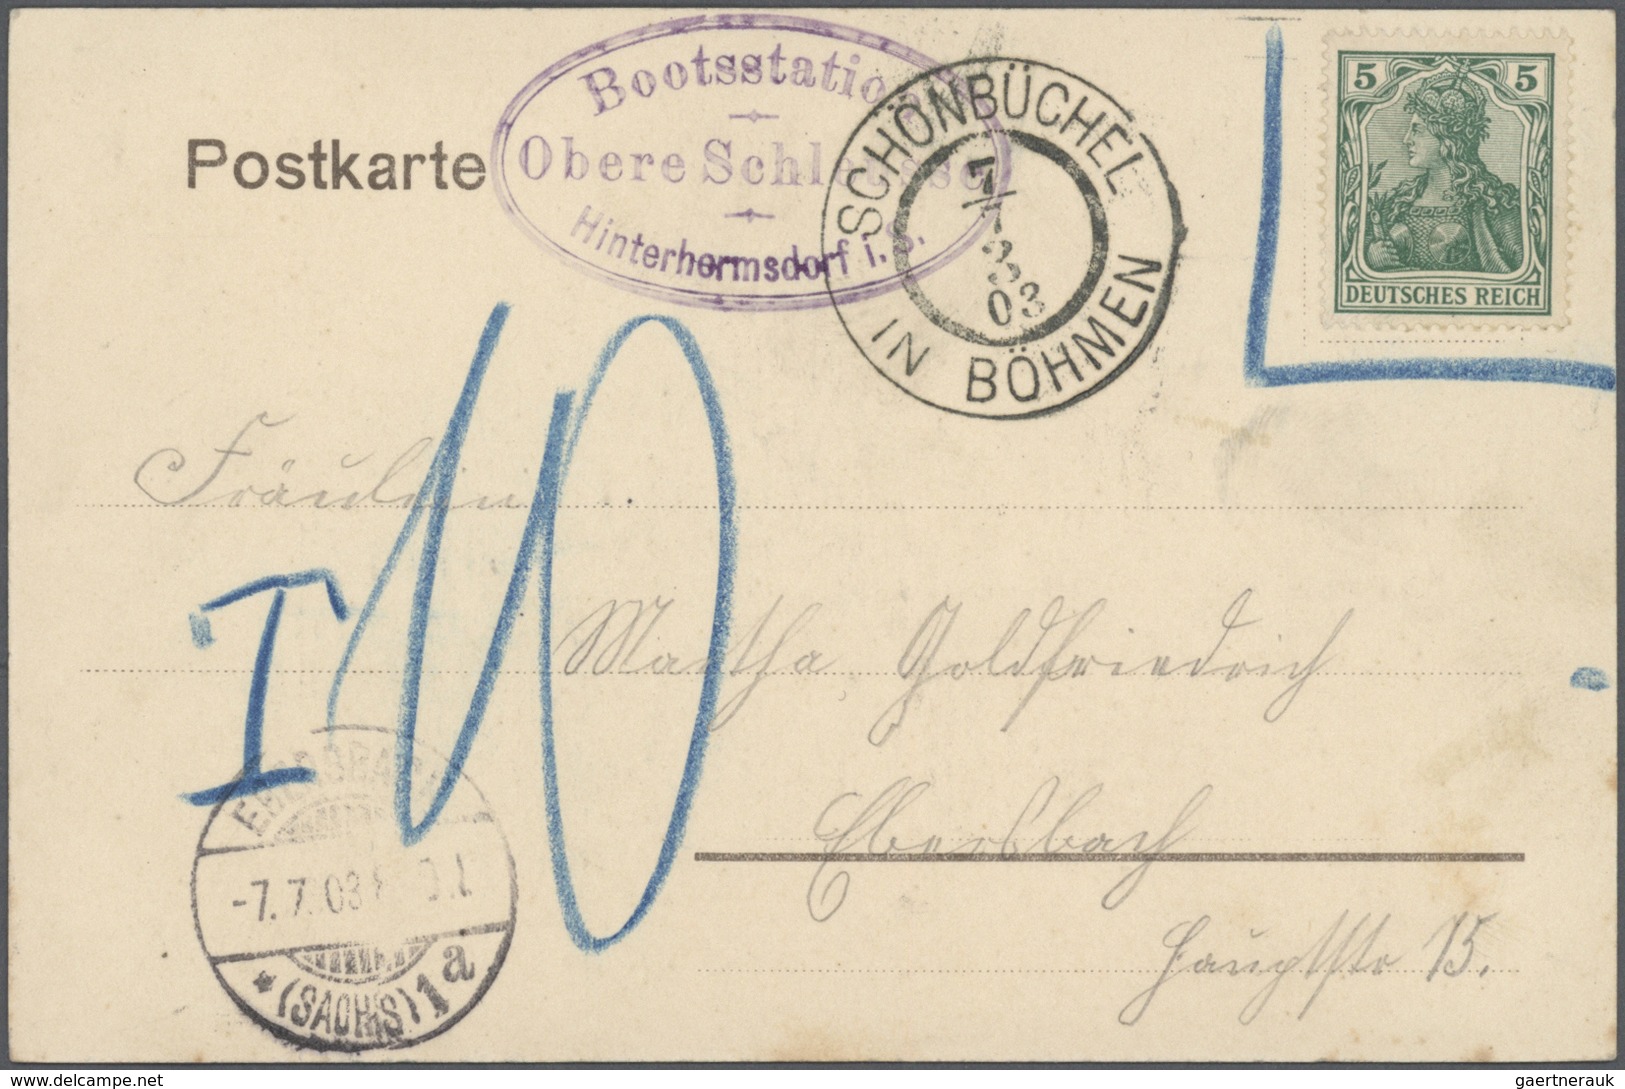 24852 Schiffspost Deutschland: ab 1896 Partie Schiffahrt auf der Elbe, Donau, Rhein, sowie viele Starnberg